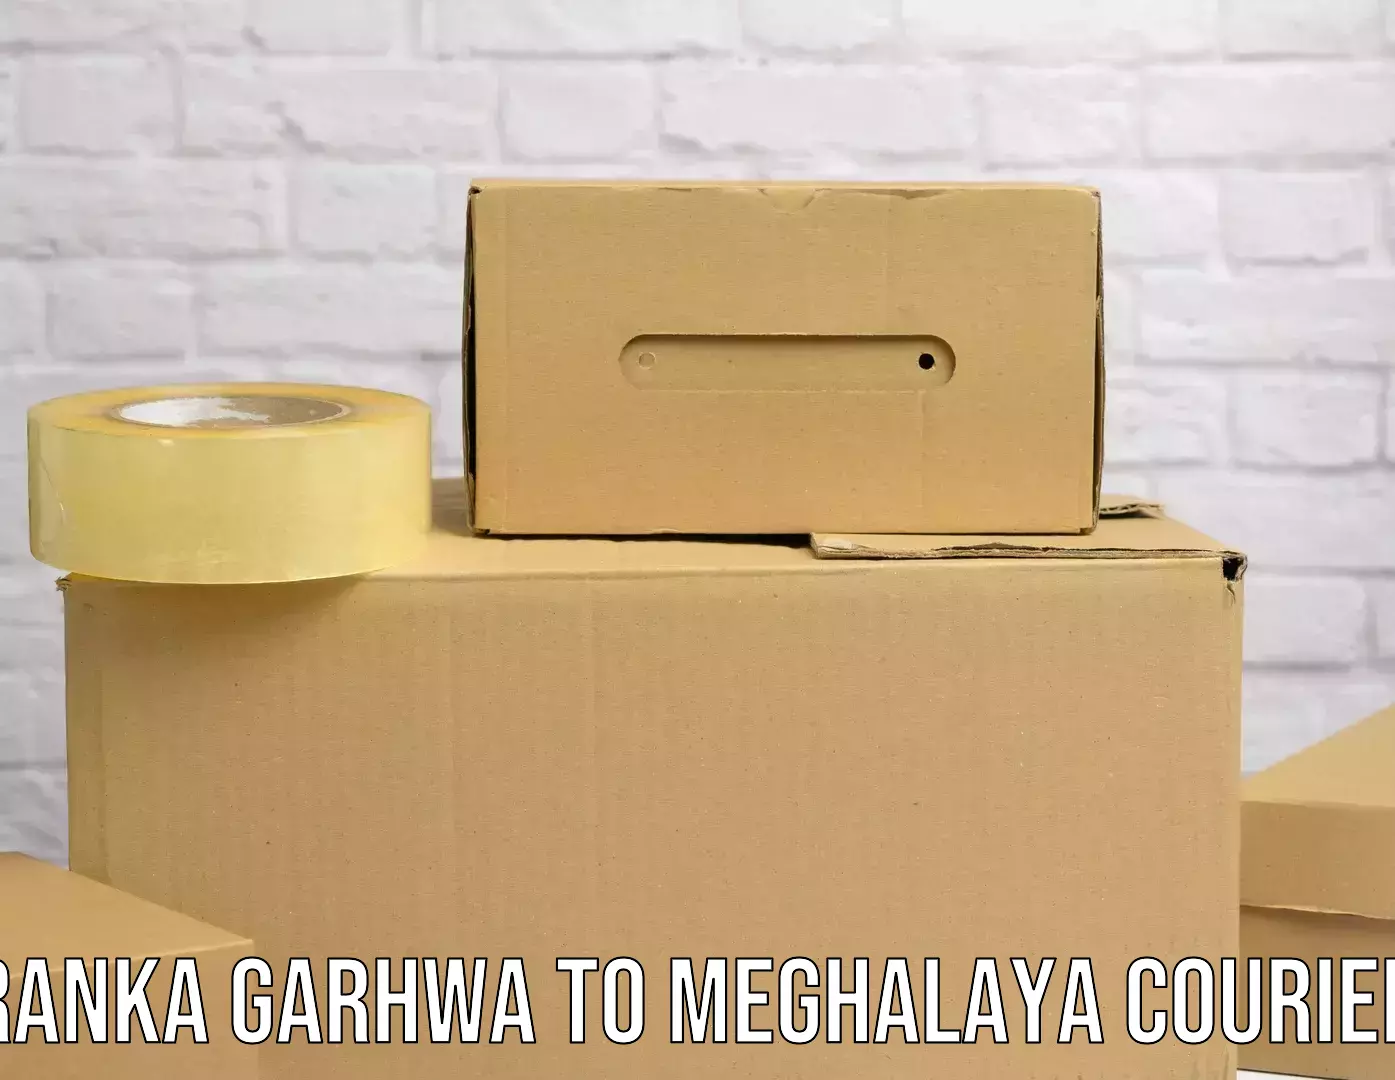 Customized shipping options in Ranka Garhwa to Meghalaya